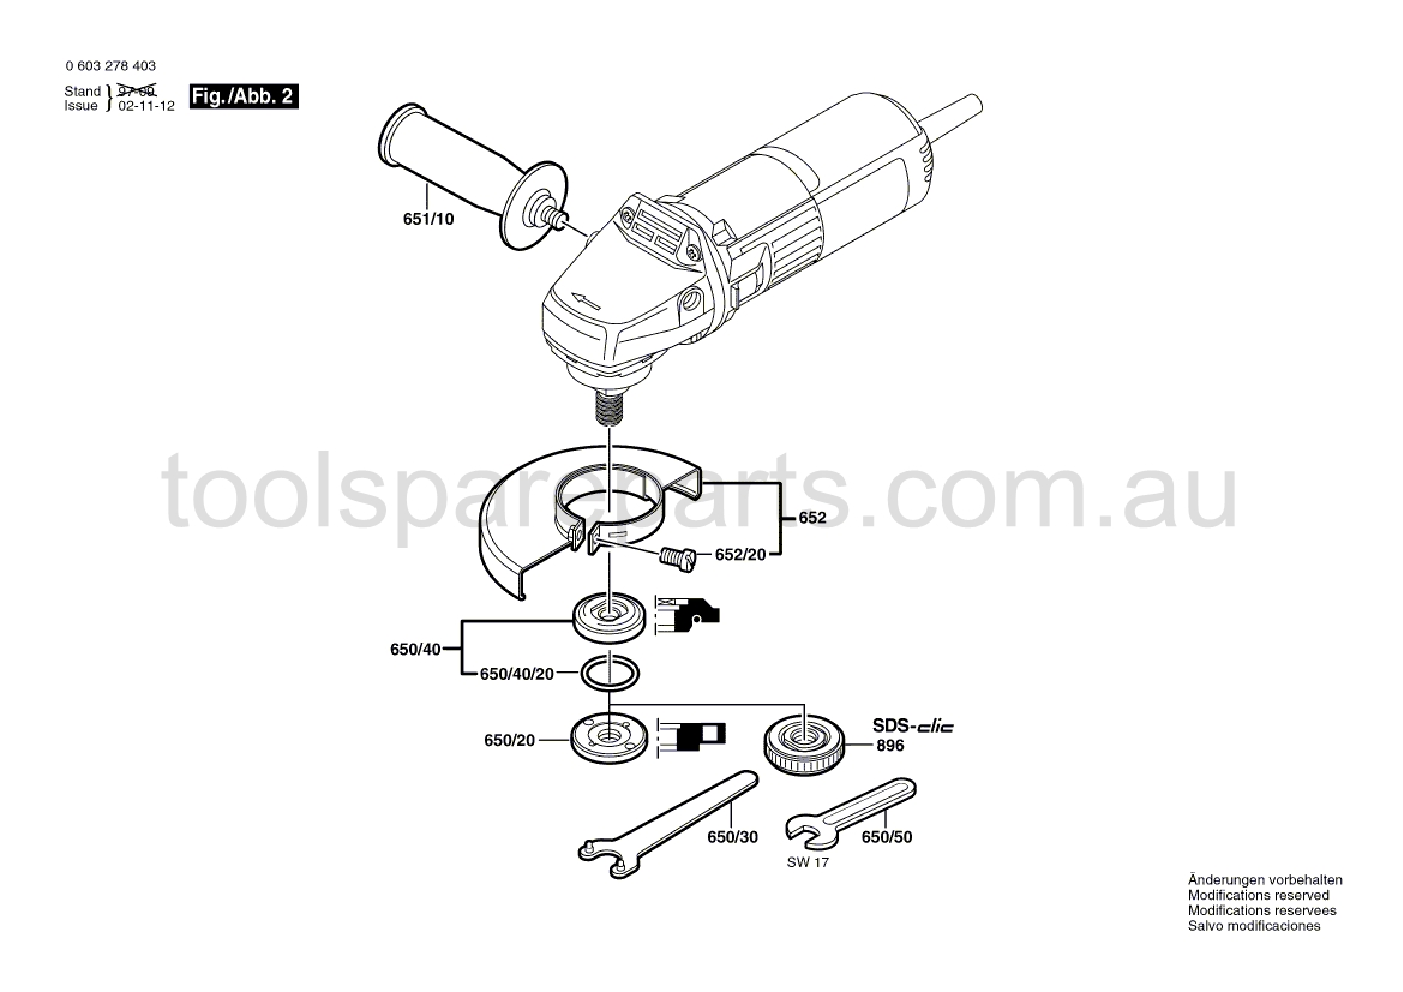 Bosch PWS 6-100 0603278465  Diagram 2